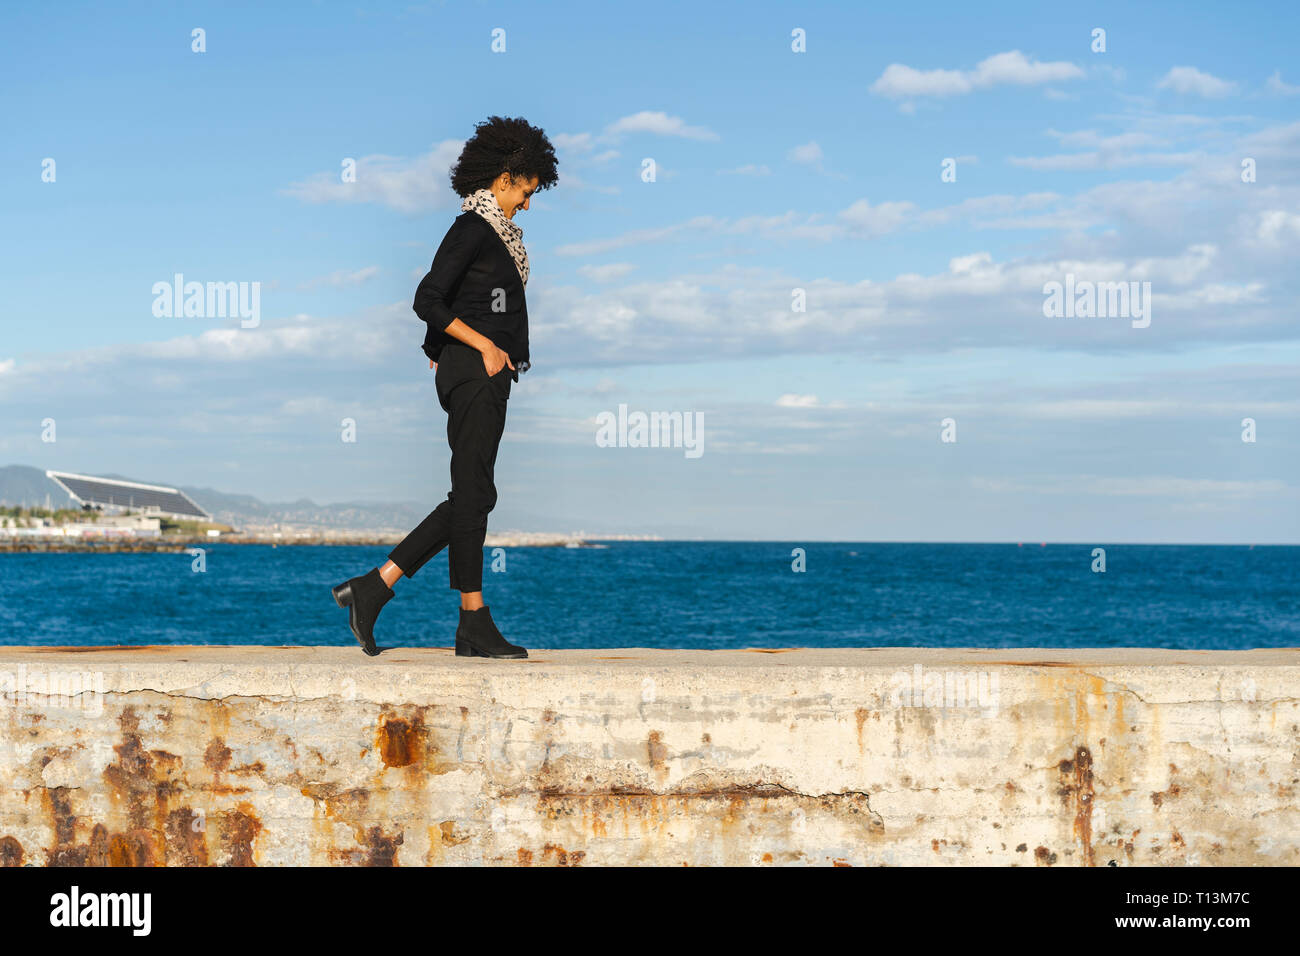 Espagne, Barcelone, laughing woman dressed in black marche sur mur à la lumière du soleil Banque D'Images